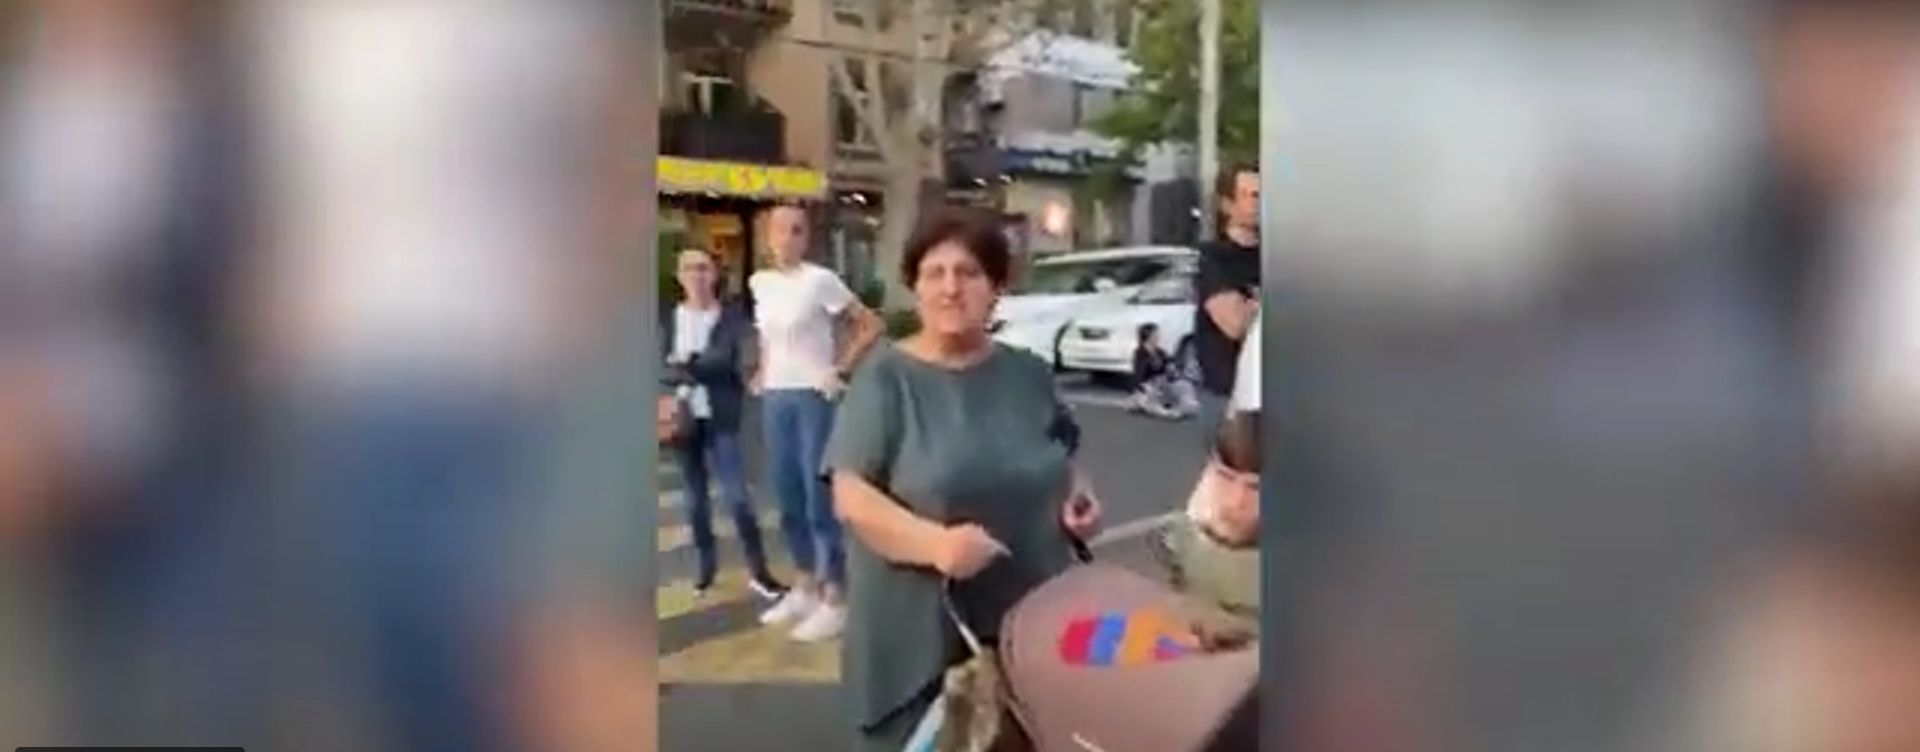 Երևանում մայրերն ու երեխաները ճանապարհներ են փակել՝ իրականացնելով իրազեկման ակցիաներ